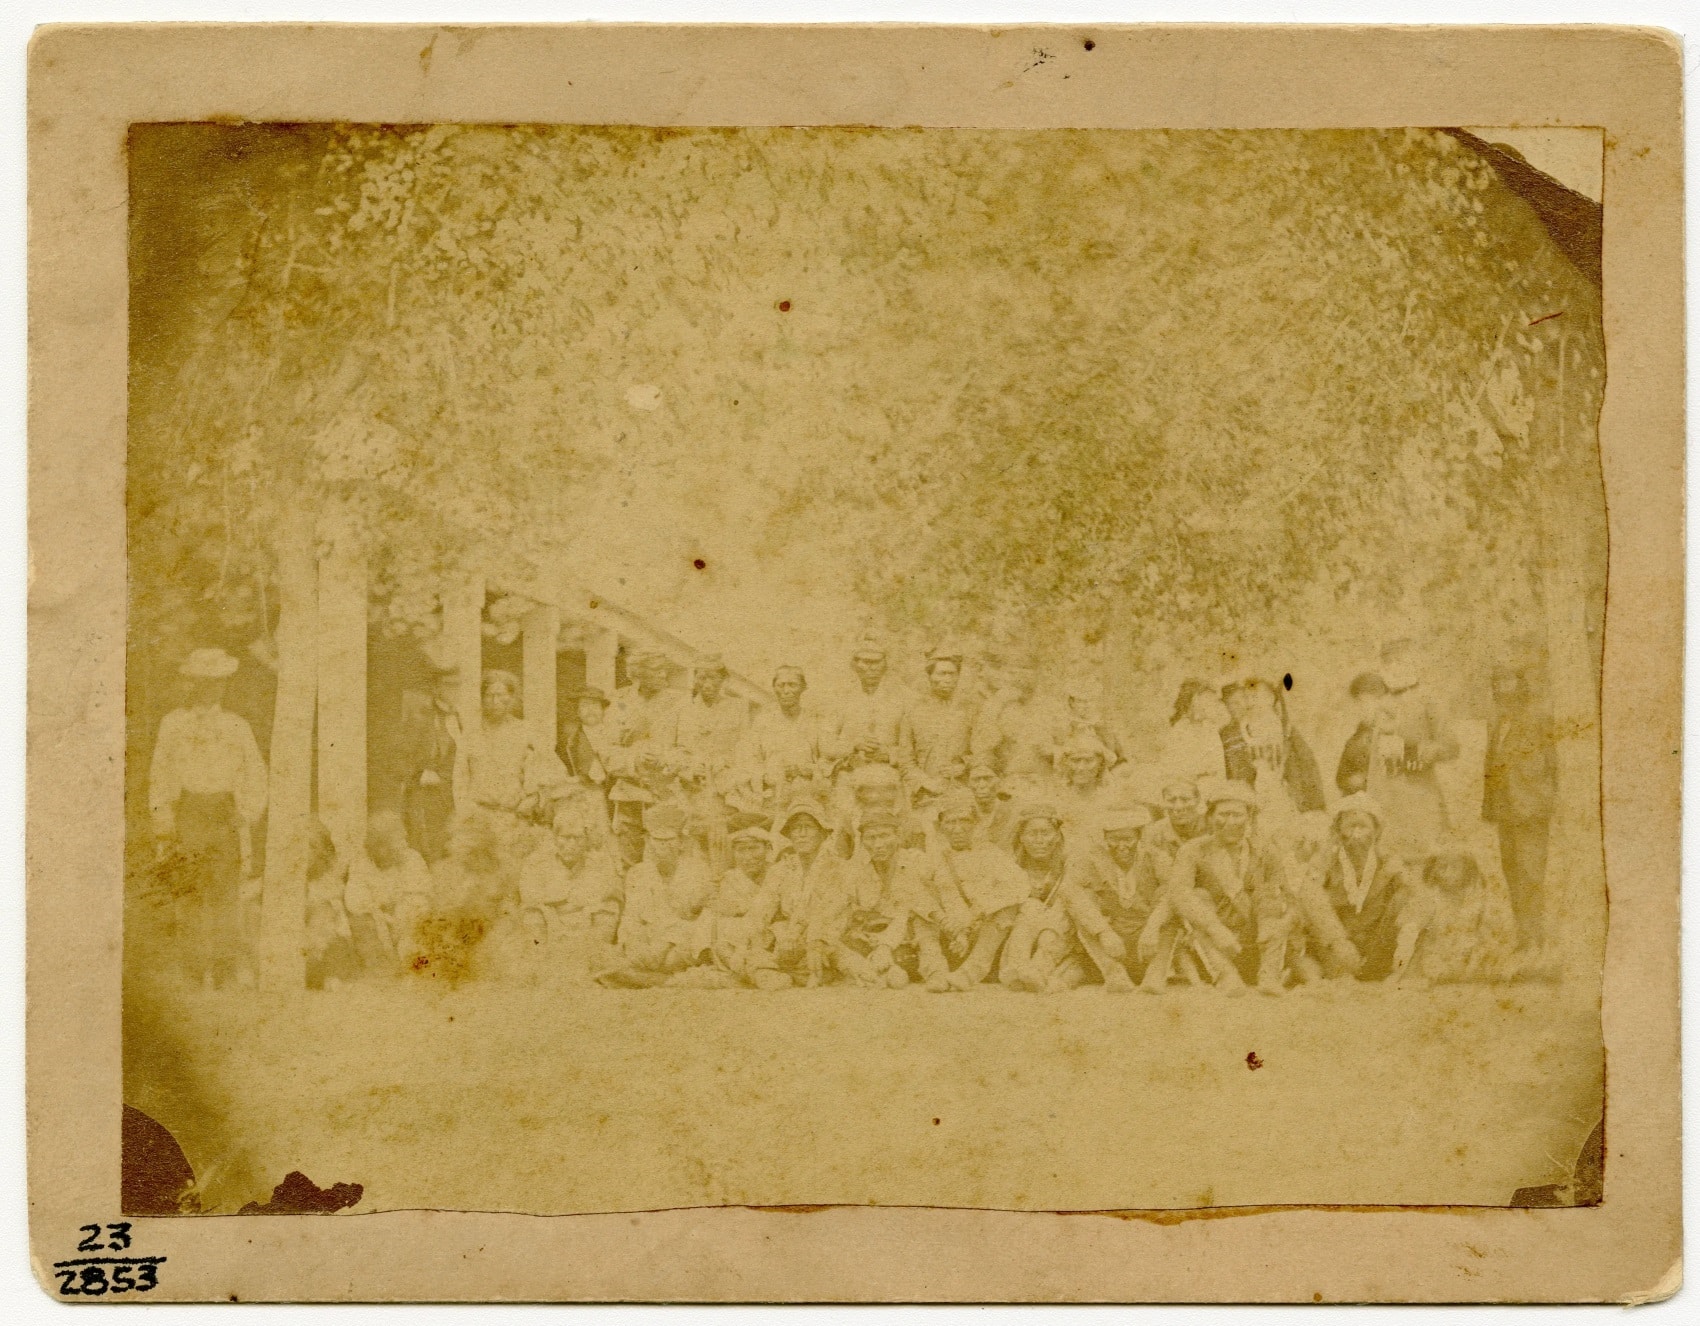 Outdoor portrait of Navajo Treaty signers at Fort Sumner, June 1868.